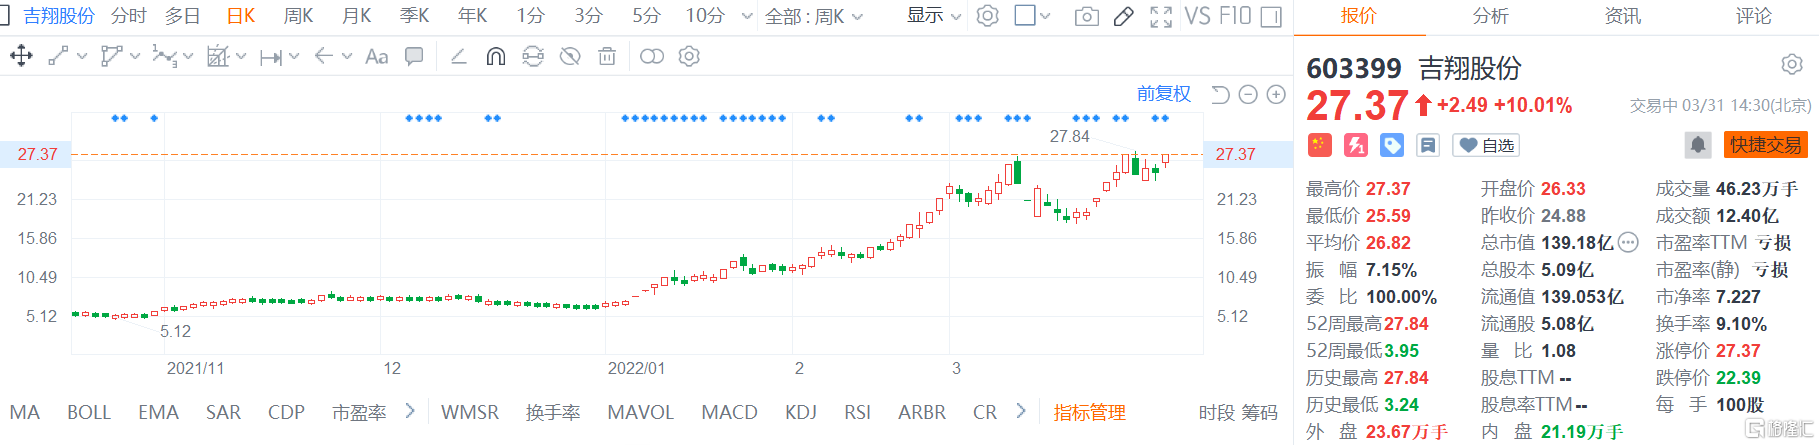 吉翔股份(603399.SH)涨停报27.37元 总市值139.2亿